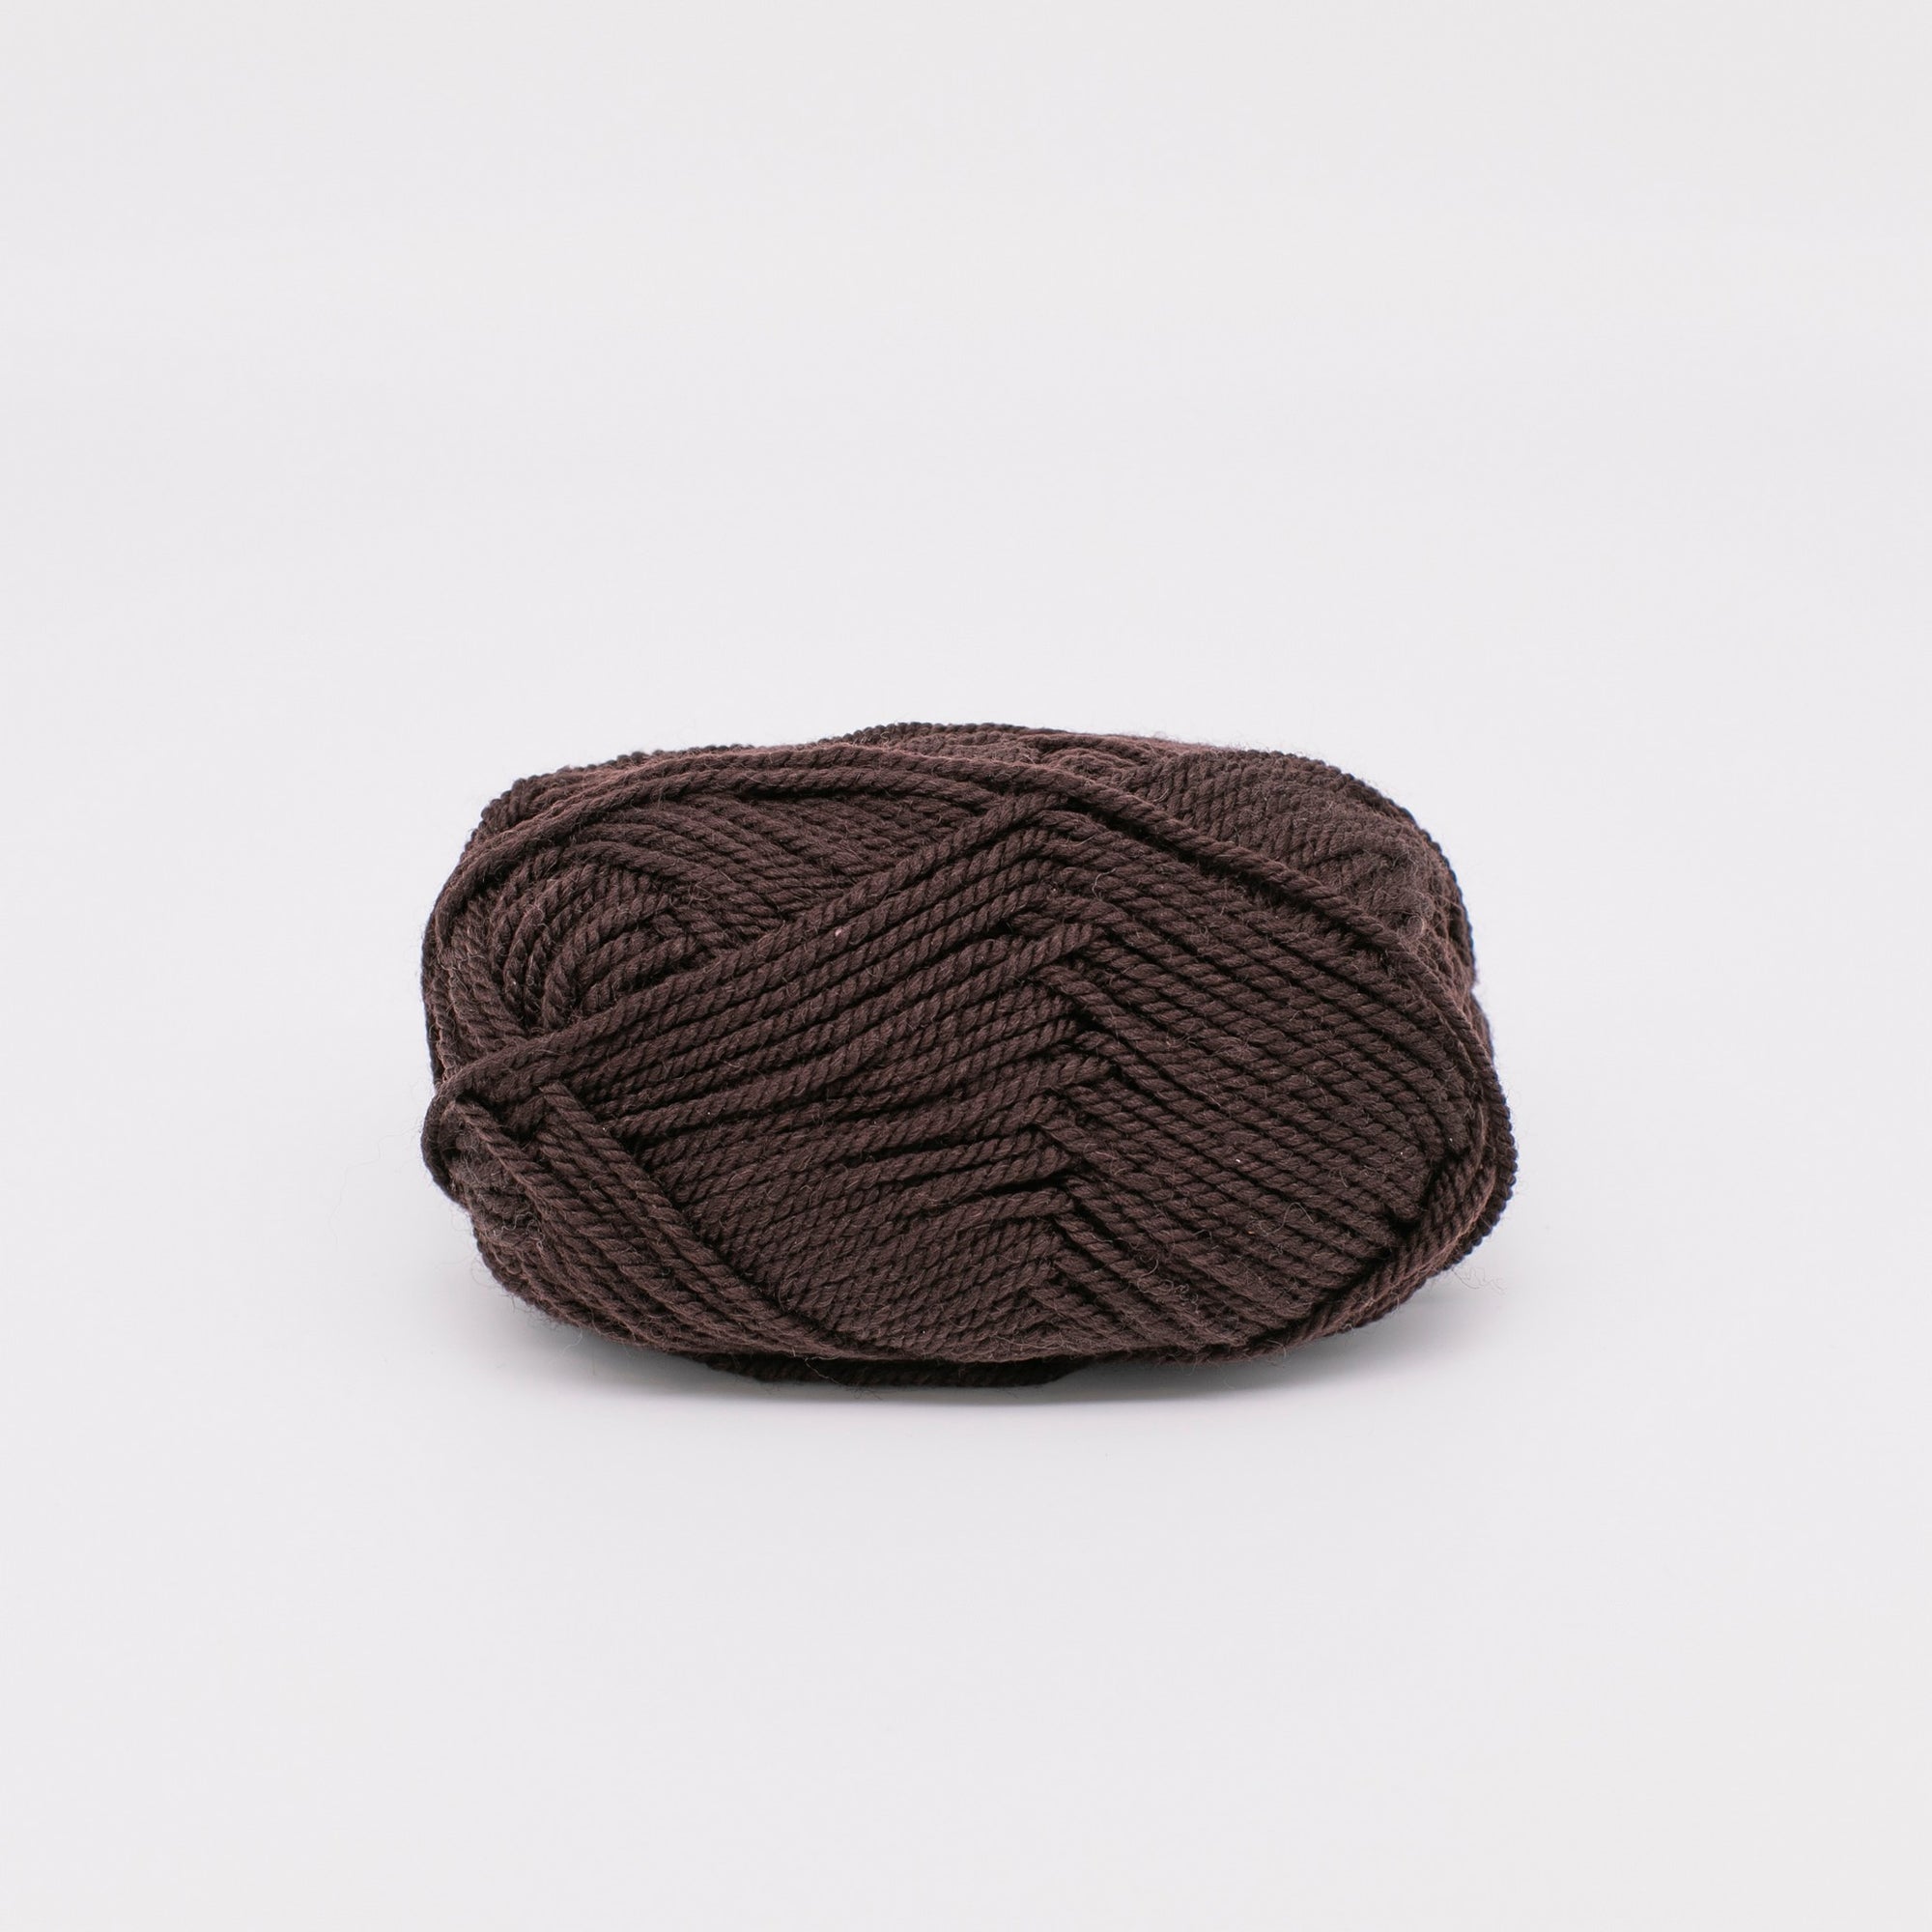 Undyed Natural Coloured Dark Brown Yarn - 6 pack – Nat-Ewe-Ral Wool